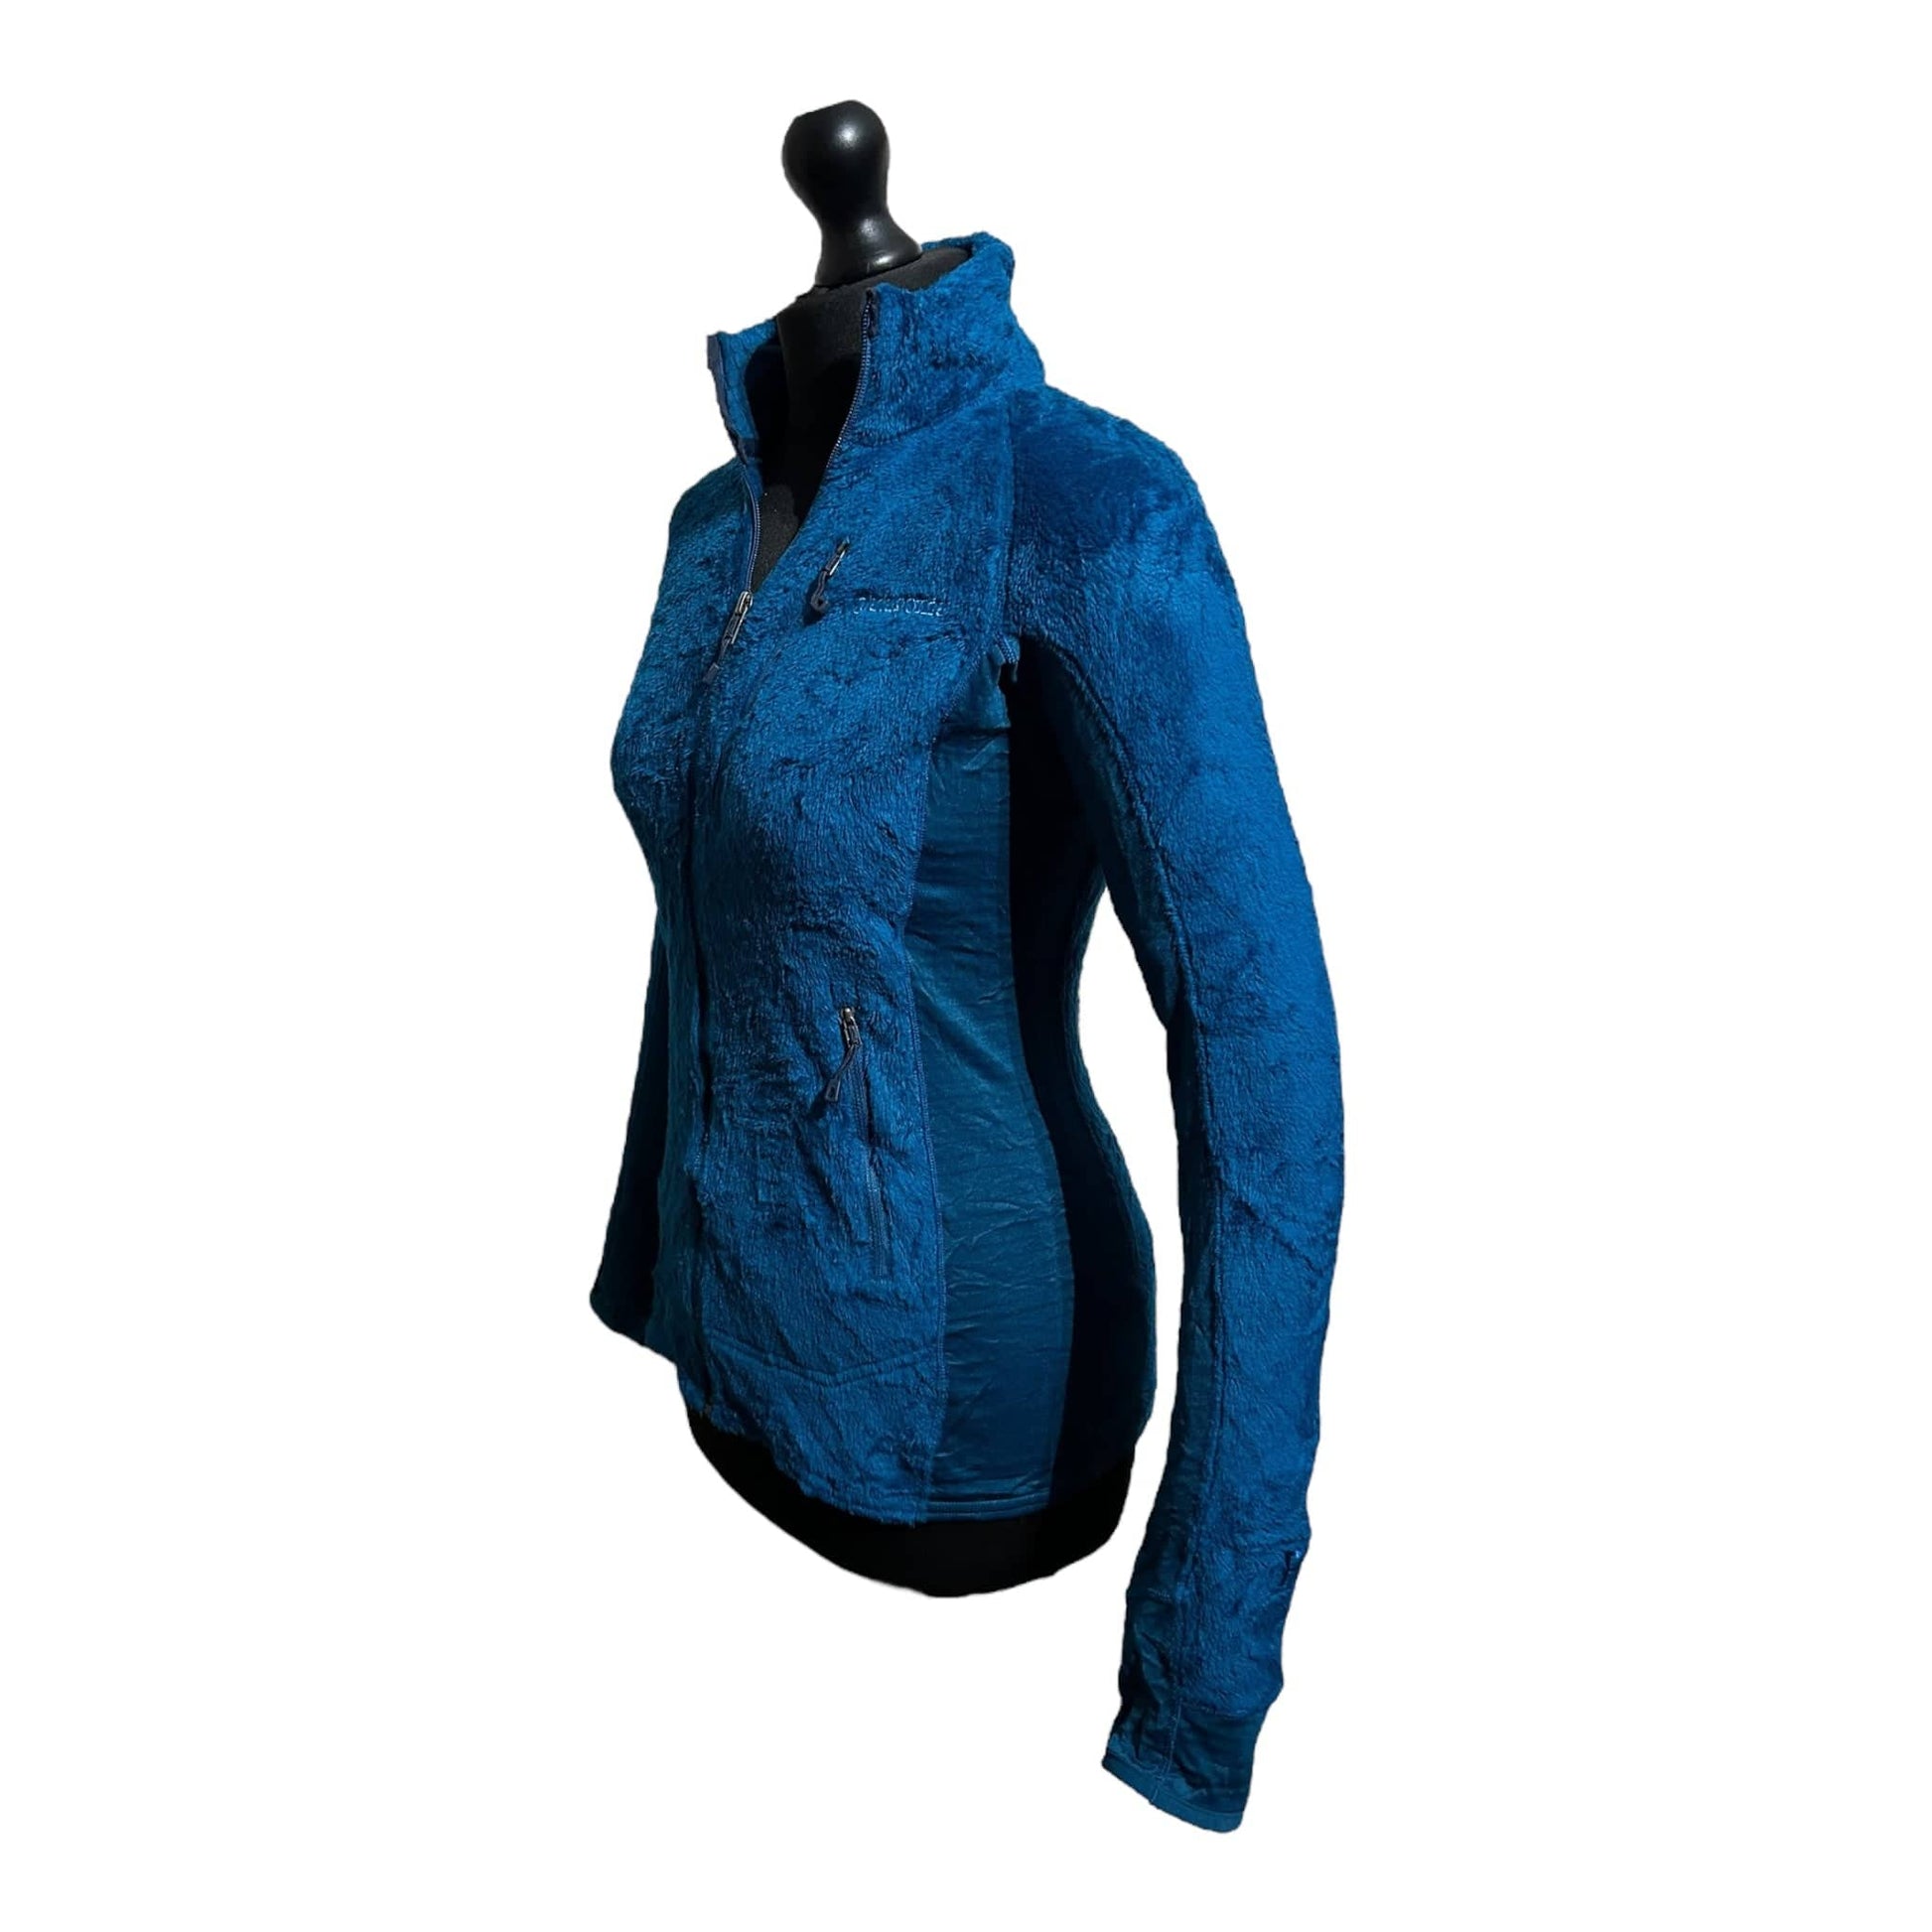 Patagonia R2® Fleece Jacket - Recurring.Life